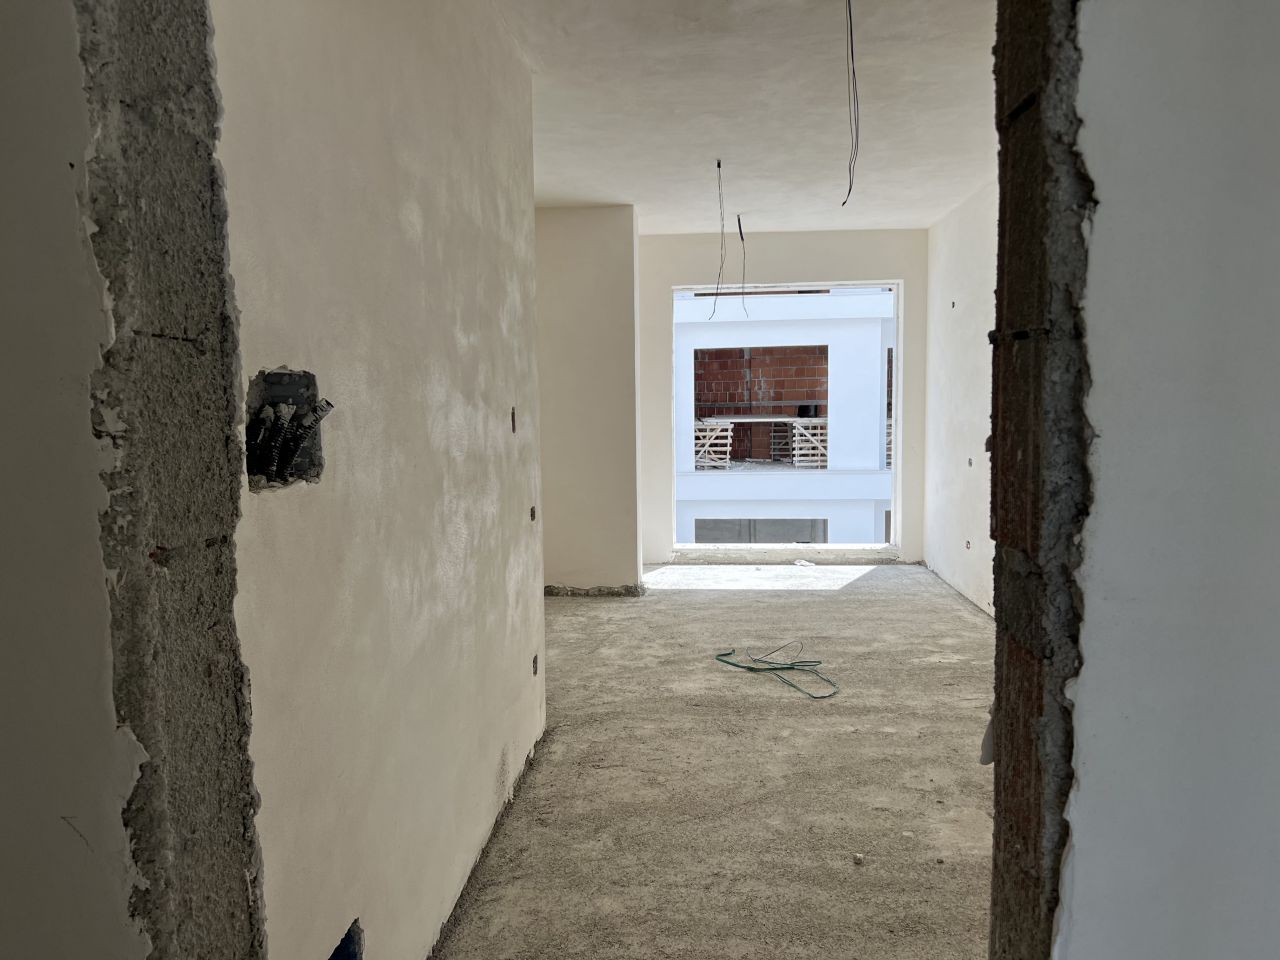 Продается квартира в Големе Дурресе, Албания, в строящемся новом здании, недалеко от пляжа